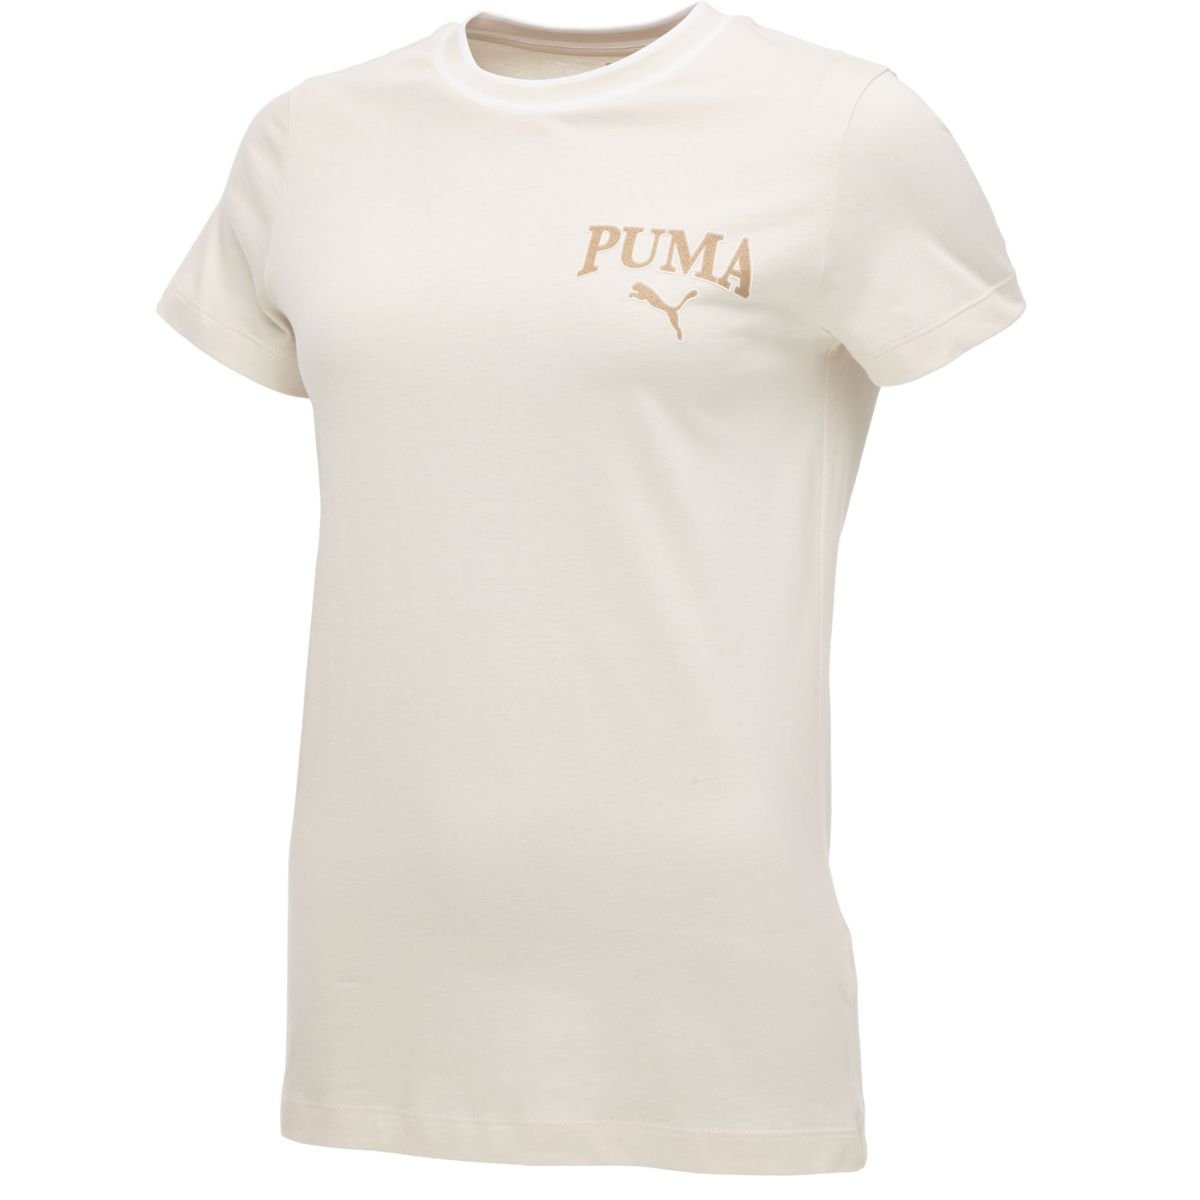 Tričko Puma Squad Tee W - biele